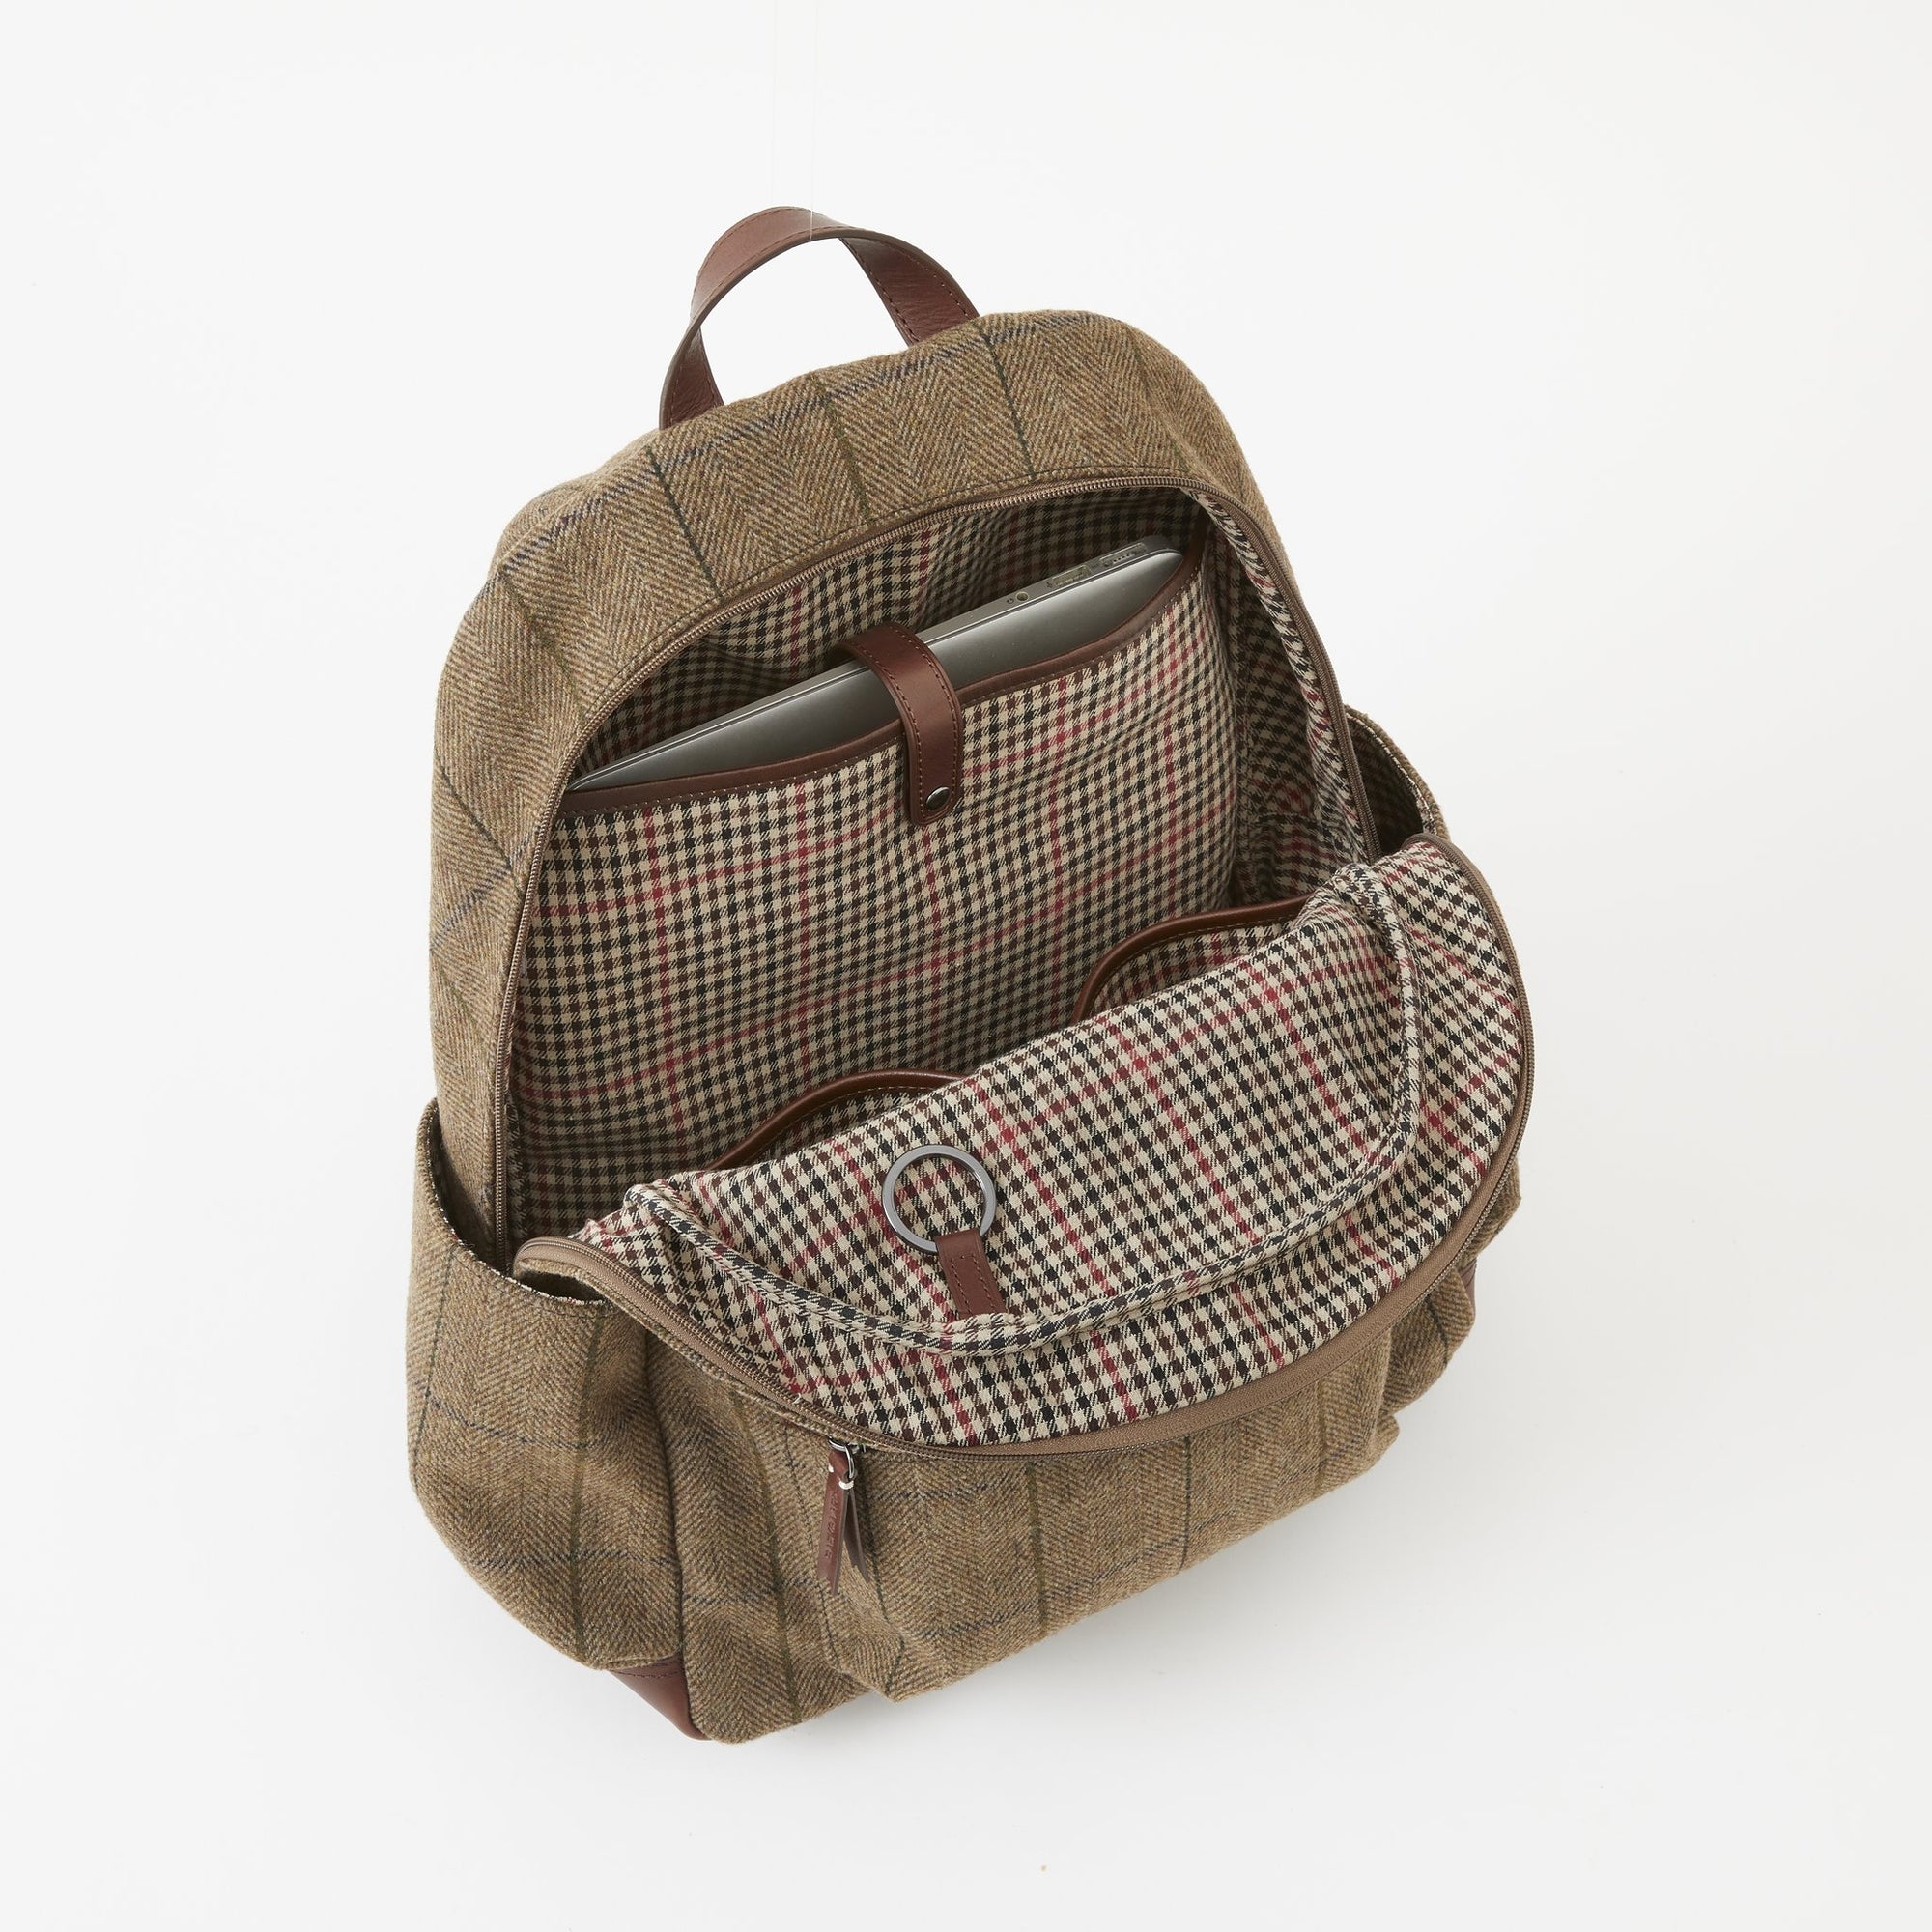 Clark Backpack in Brown Tweed by Baekgaard